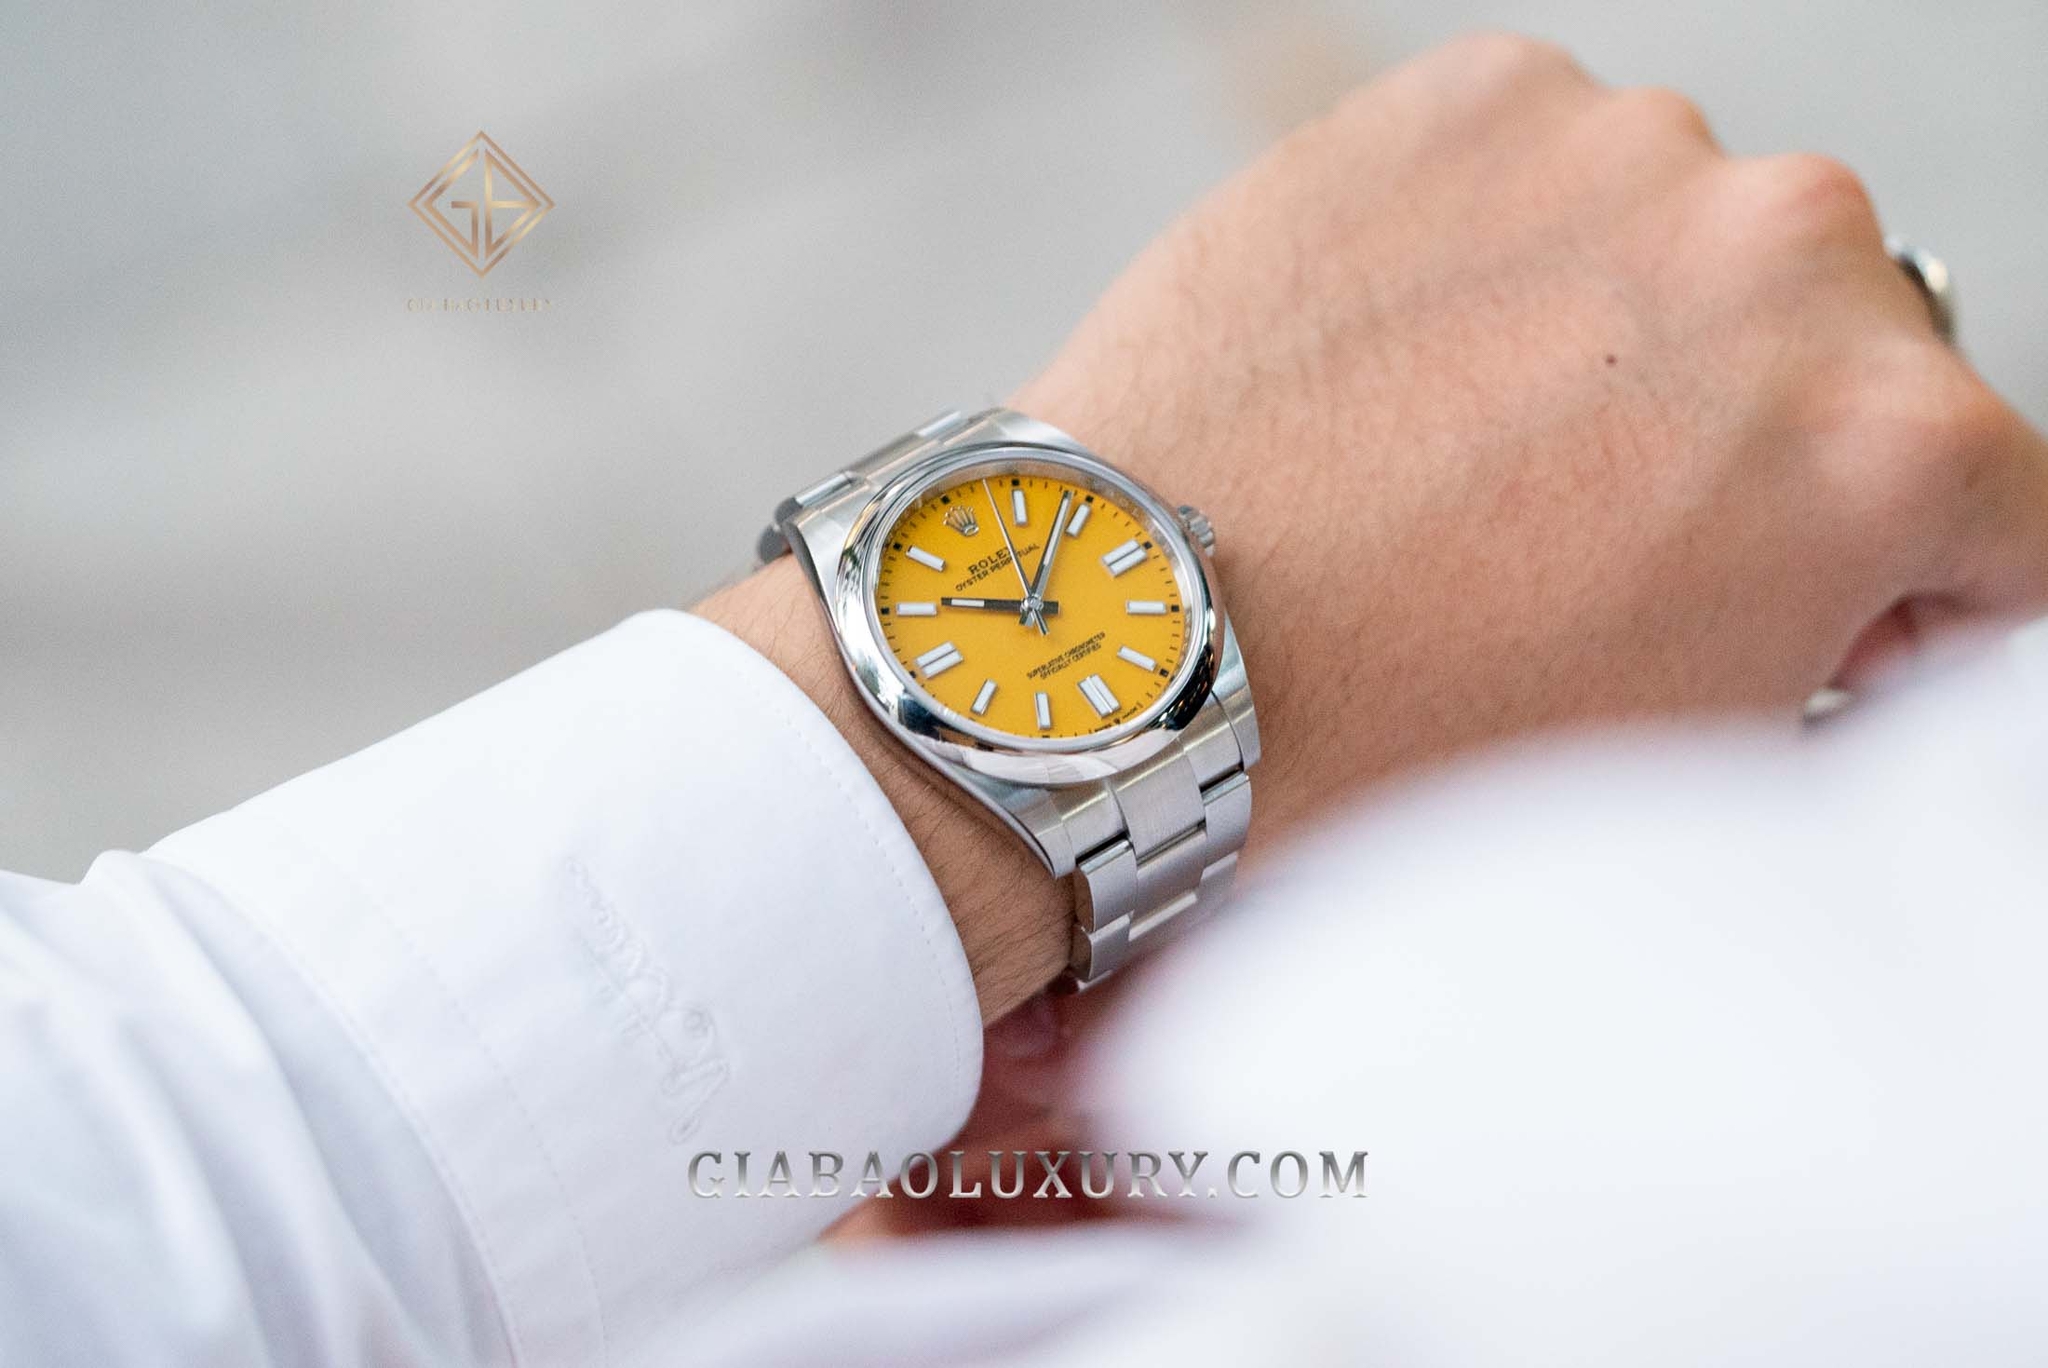 Đâu là đồng hồ Rolex Oyster Perpetual 2020 phù hợp nhất dành cho bạn?